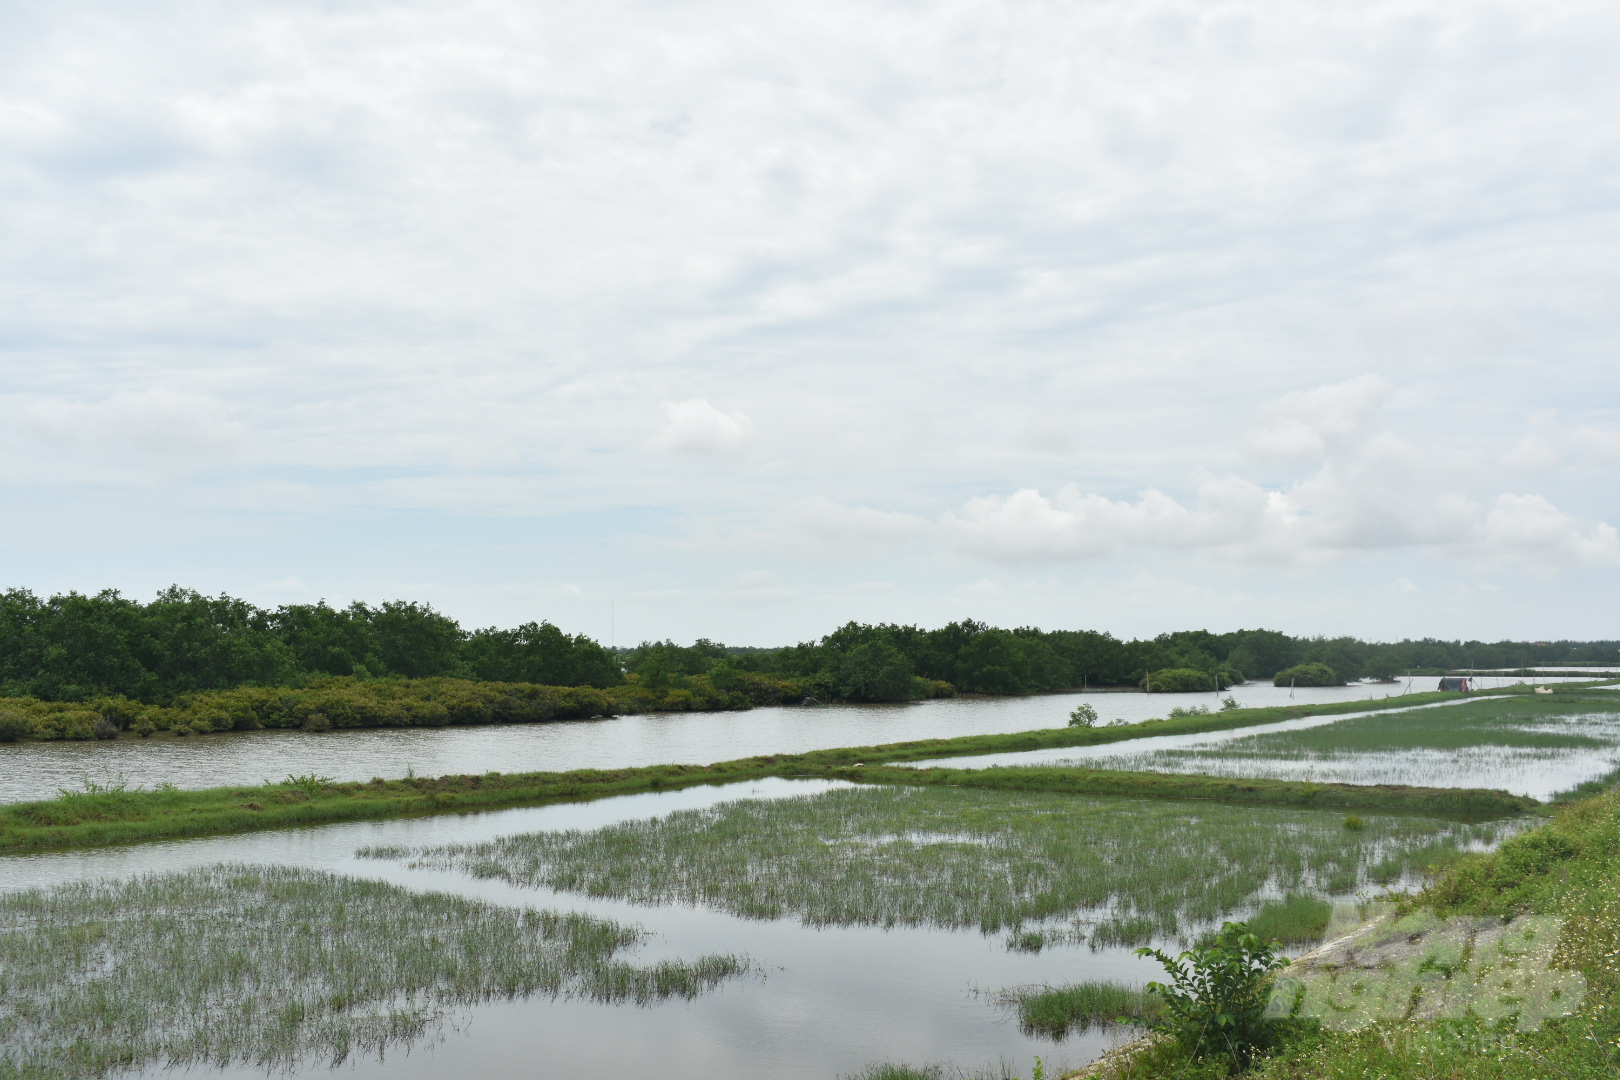 Khu bảo tồn thiên nhiên đất ngập nước Tiền Hải, Thái Bình. Ảnh: K. Trung.